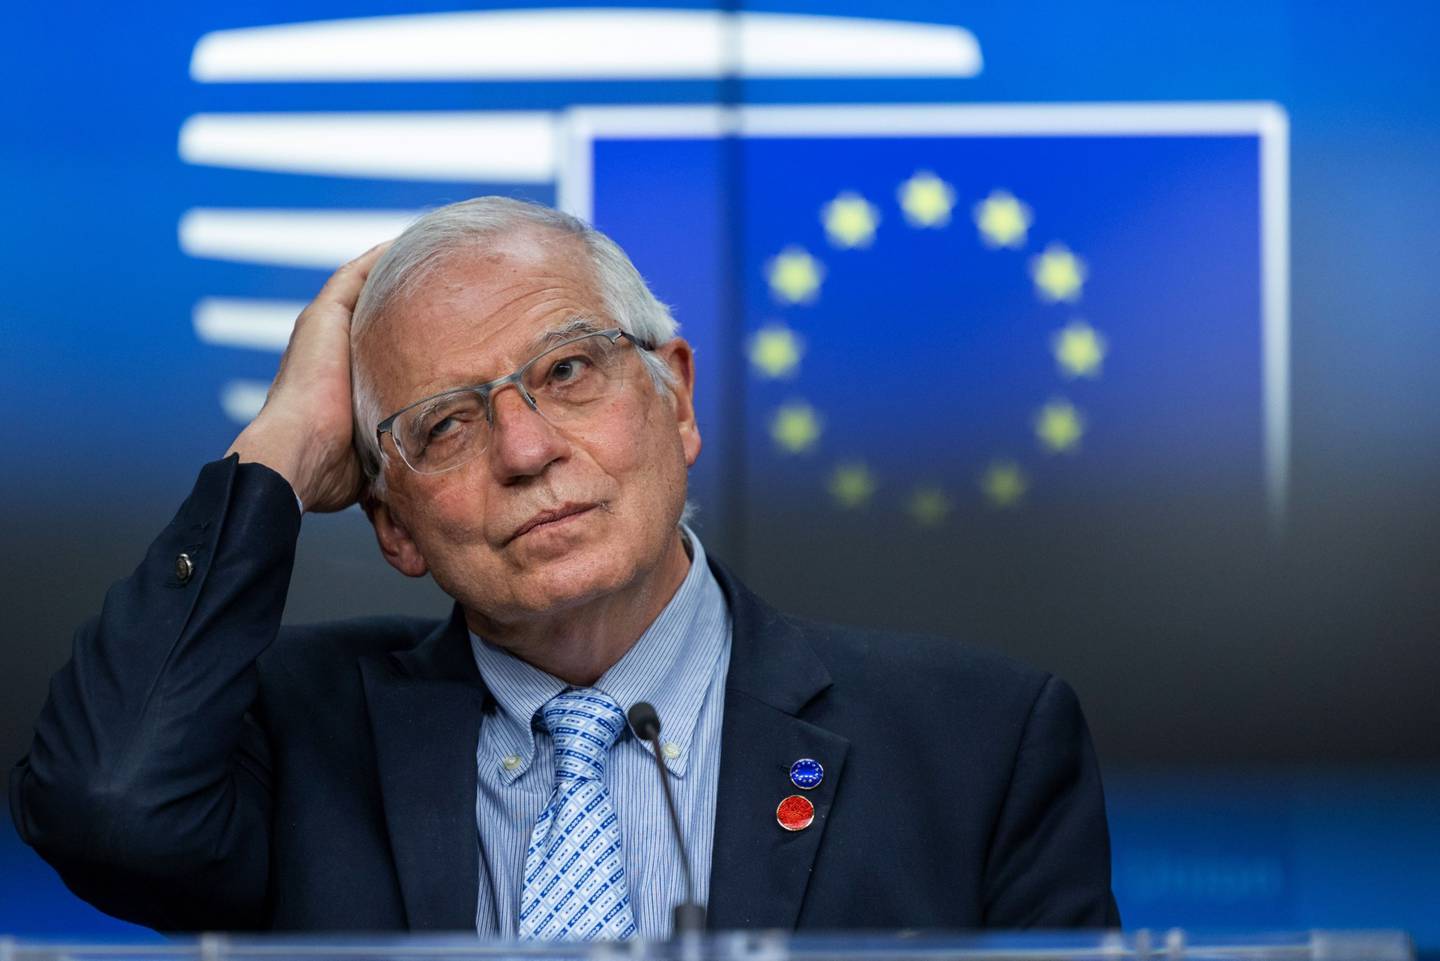 Josep Borrell, vicepresidente de la Comisión Europea, reacciona durante la conferencia de prensa tras una reunión del consejo de asuntos exteriores en Bruselas, Bélgica, el jueves 6 de mayo de 2021.